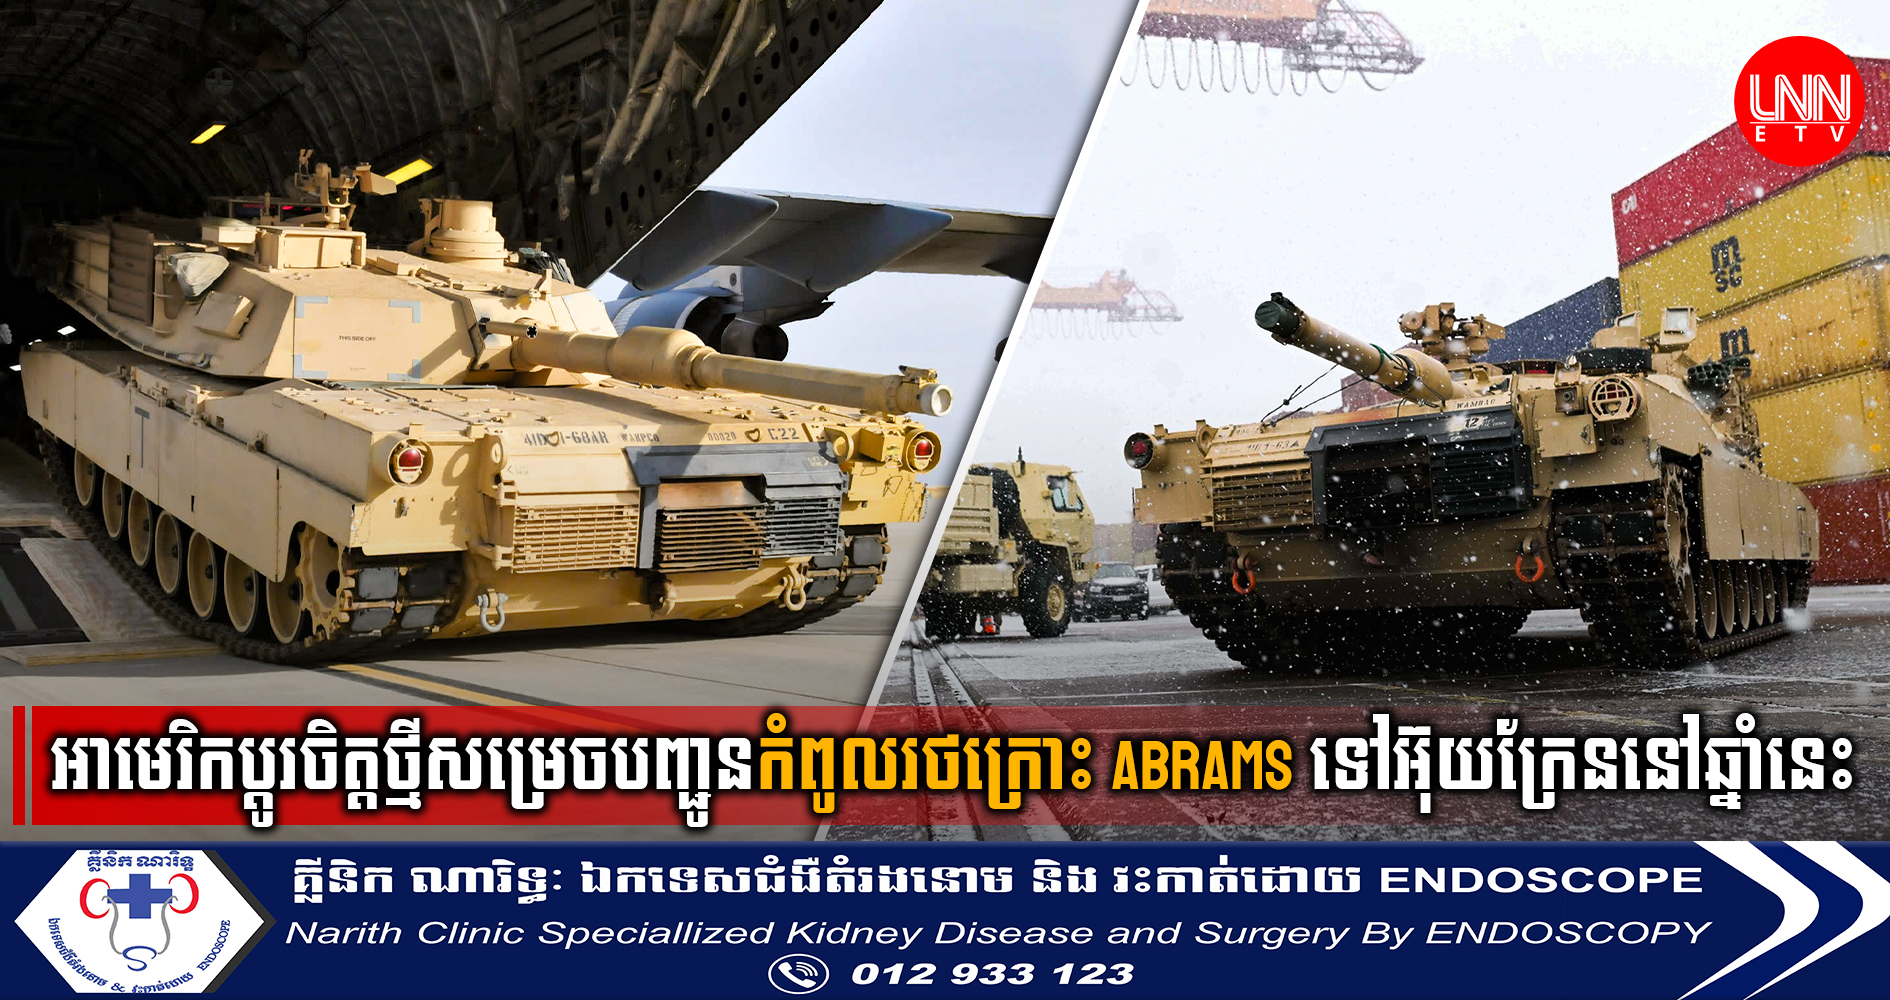 សហរដ្ឋអាមេរិកប្តូរចិត្តថ្មីសម្រេចបញ្ជូនកំពូលរថក្រោះ Abrams ទៅអ៊ុយក្រែននៅរដូវស្លឹកឈើជ្រុះឆ្នាំនេះ